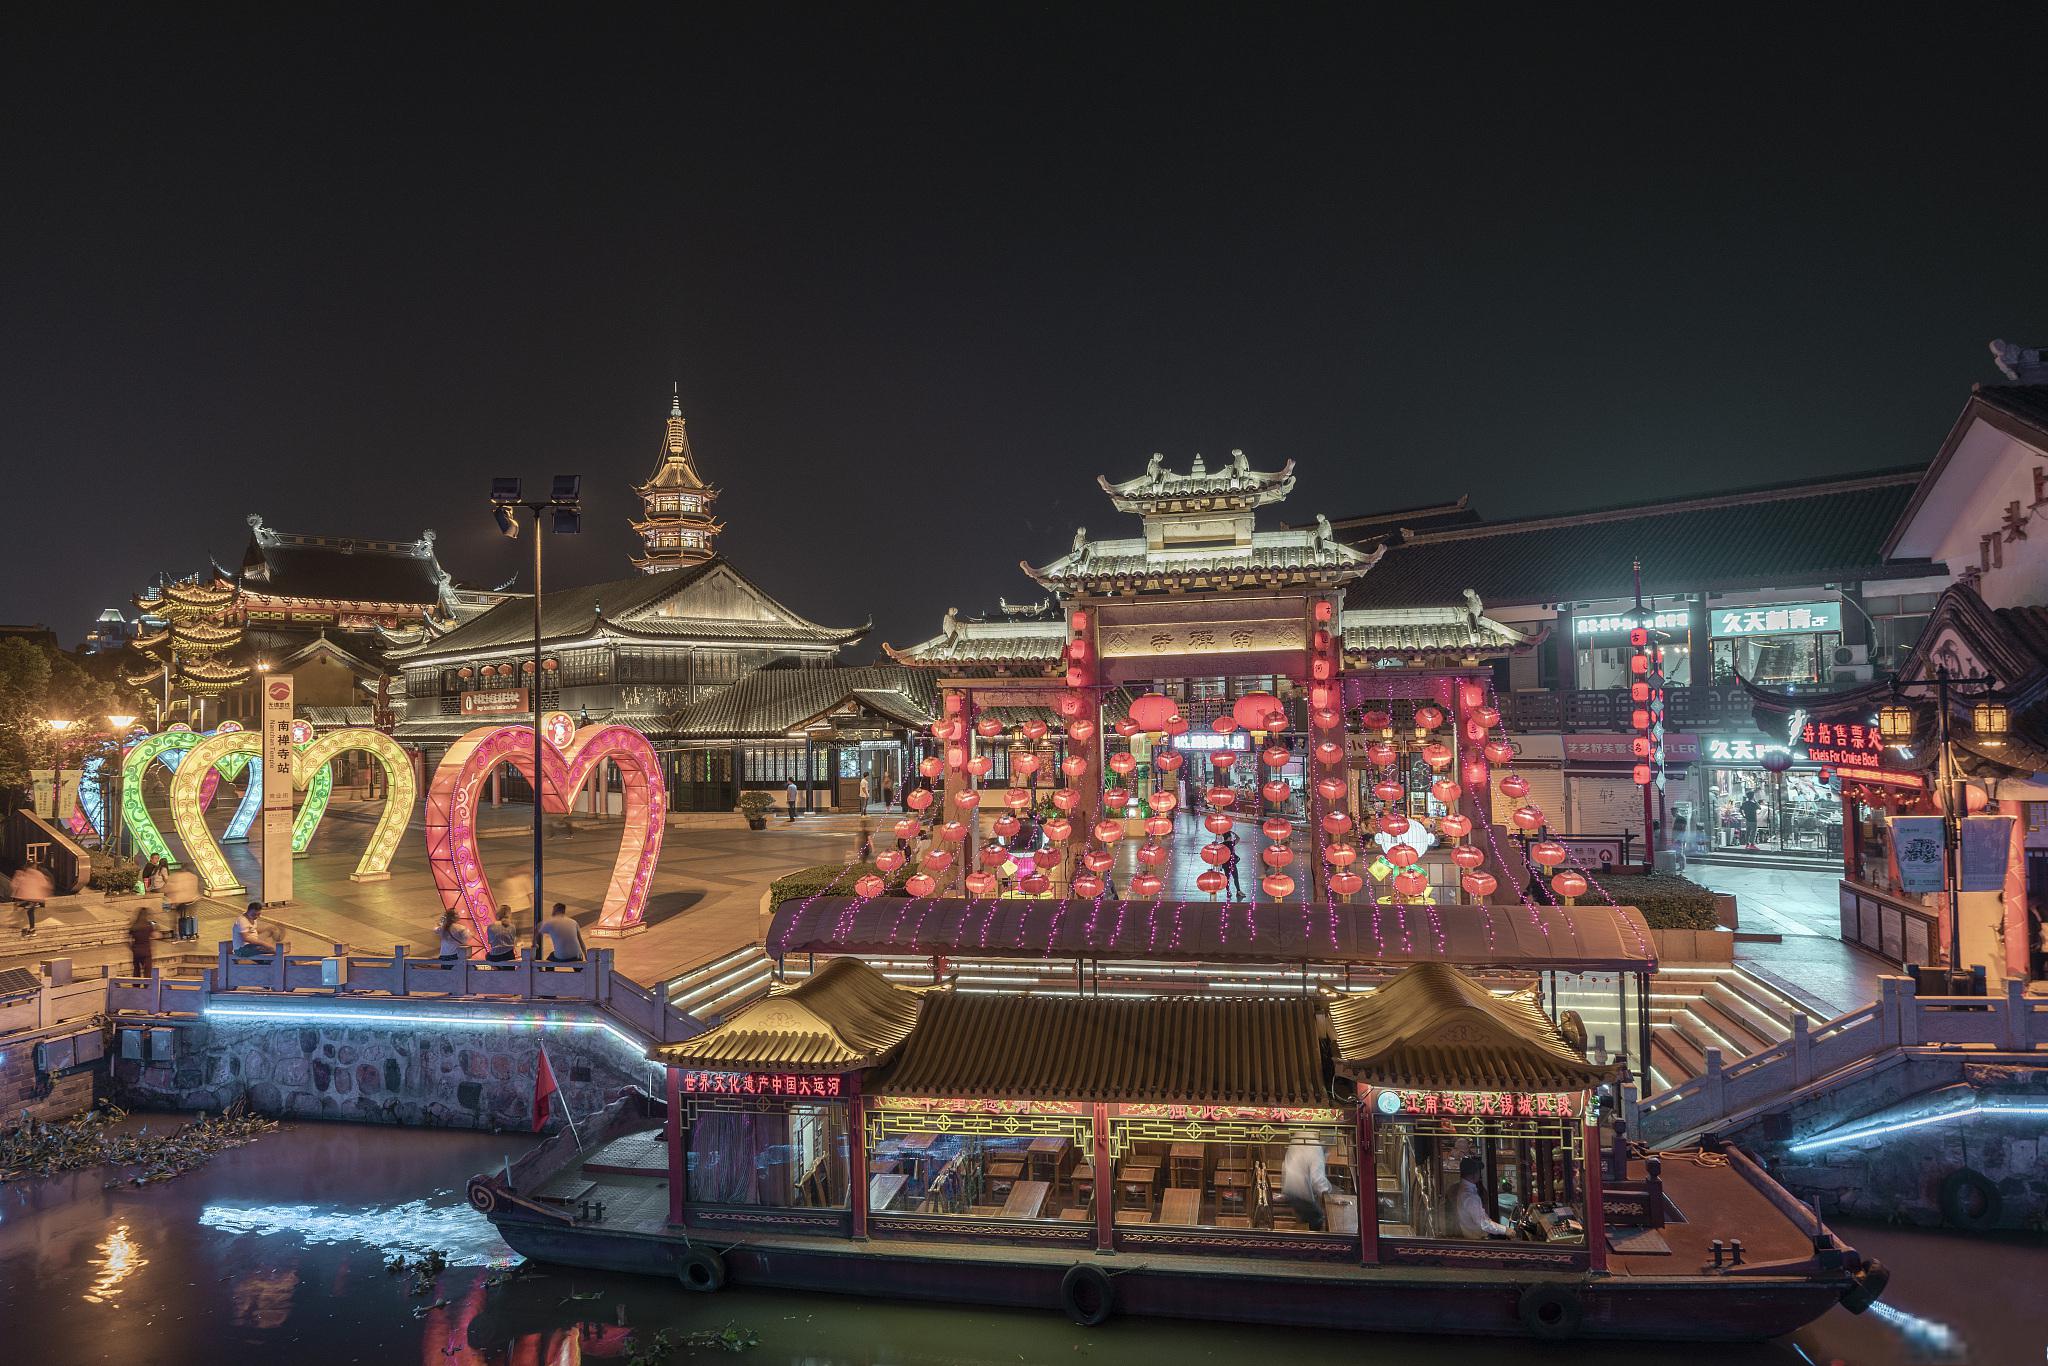 杭州五大景点:探寻古都的魅力与宁静 杭州是一座迷人的历史文化名城